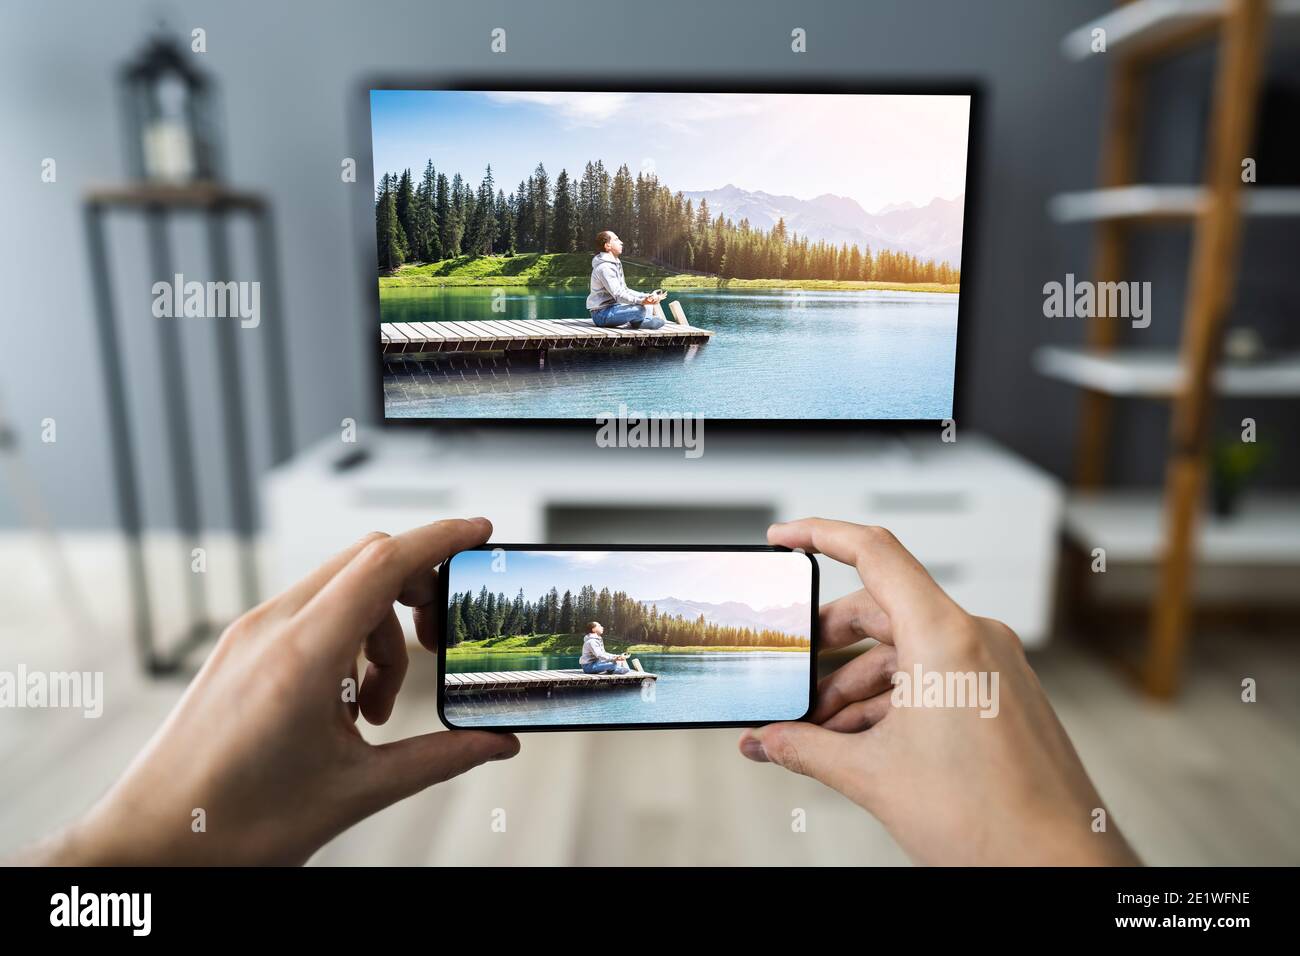 Homme regardant la télévision en streaming depuis un smartphone ou un  téléphone mobile Photo Stock - Alamy